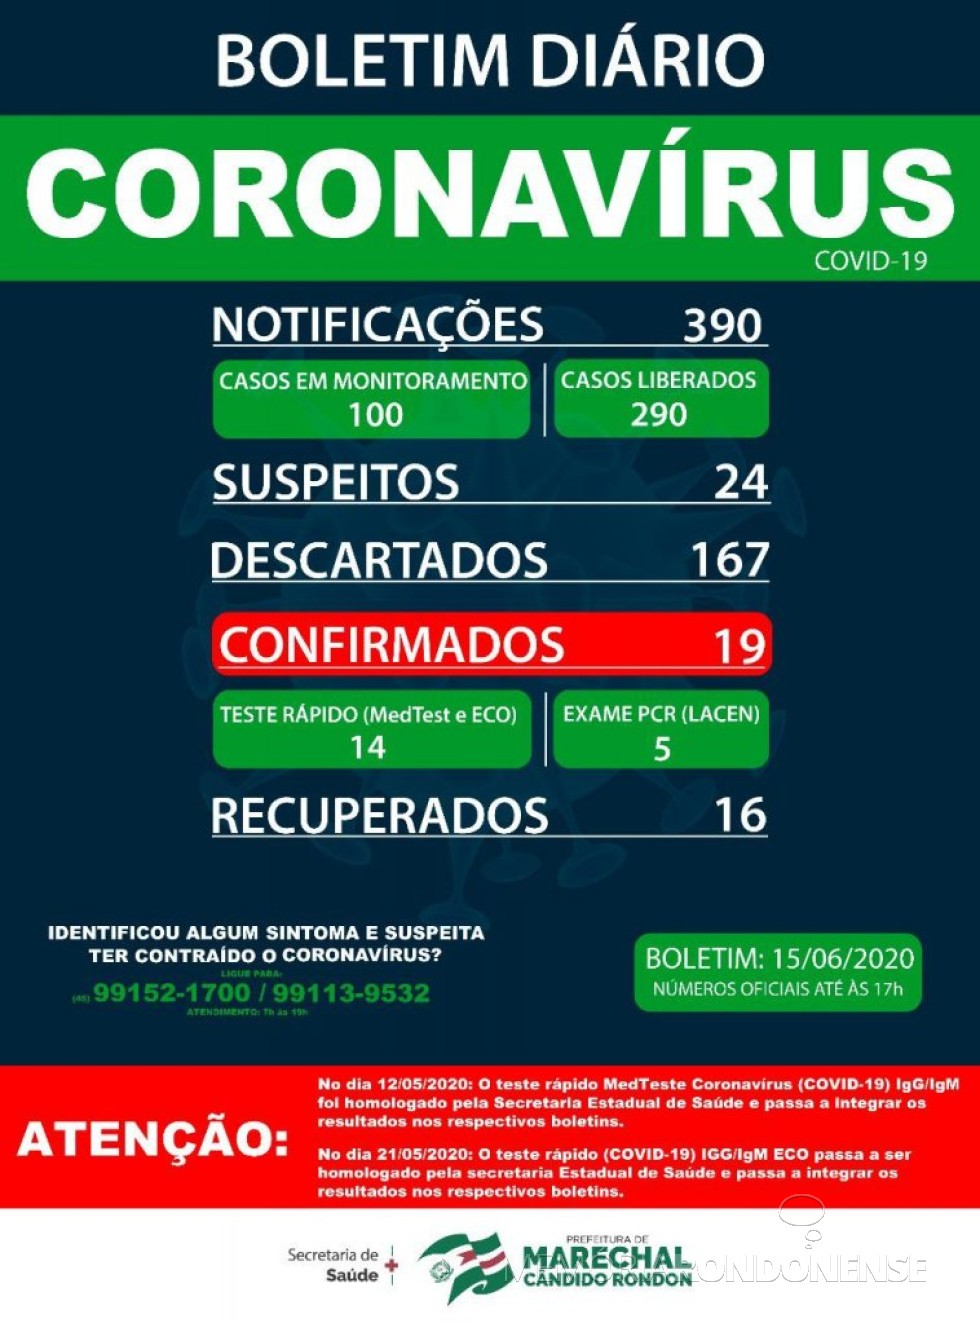 Boletim epidemiológico da Secretaria de Saúde de Marechal Cândido Rondon sobre o COVID 19 no município no dia 15.06.2020.
Imagem: Acervo Imprensa PM-MCR - FOTO 16 -
